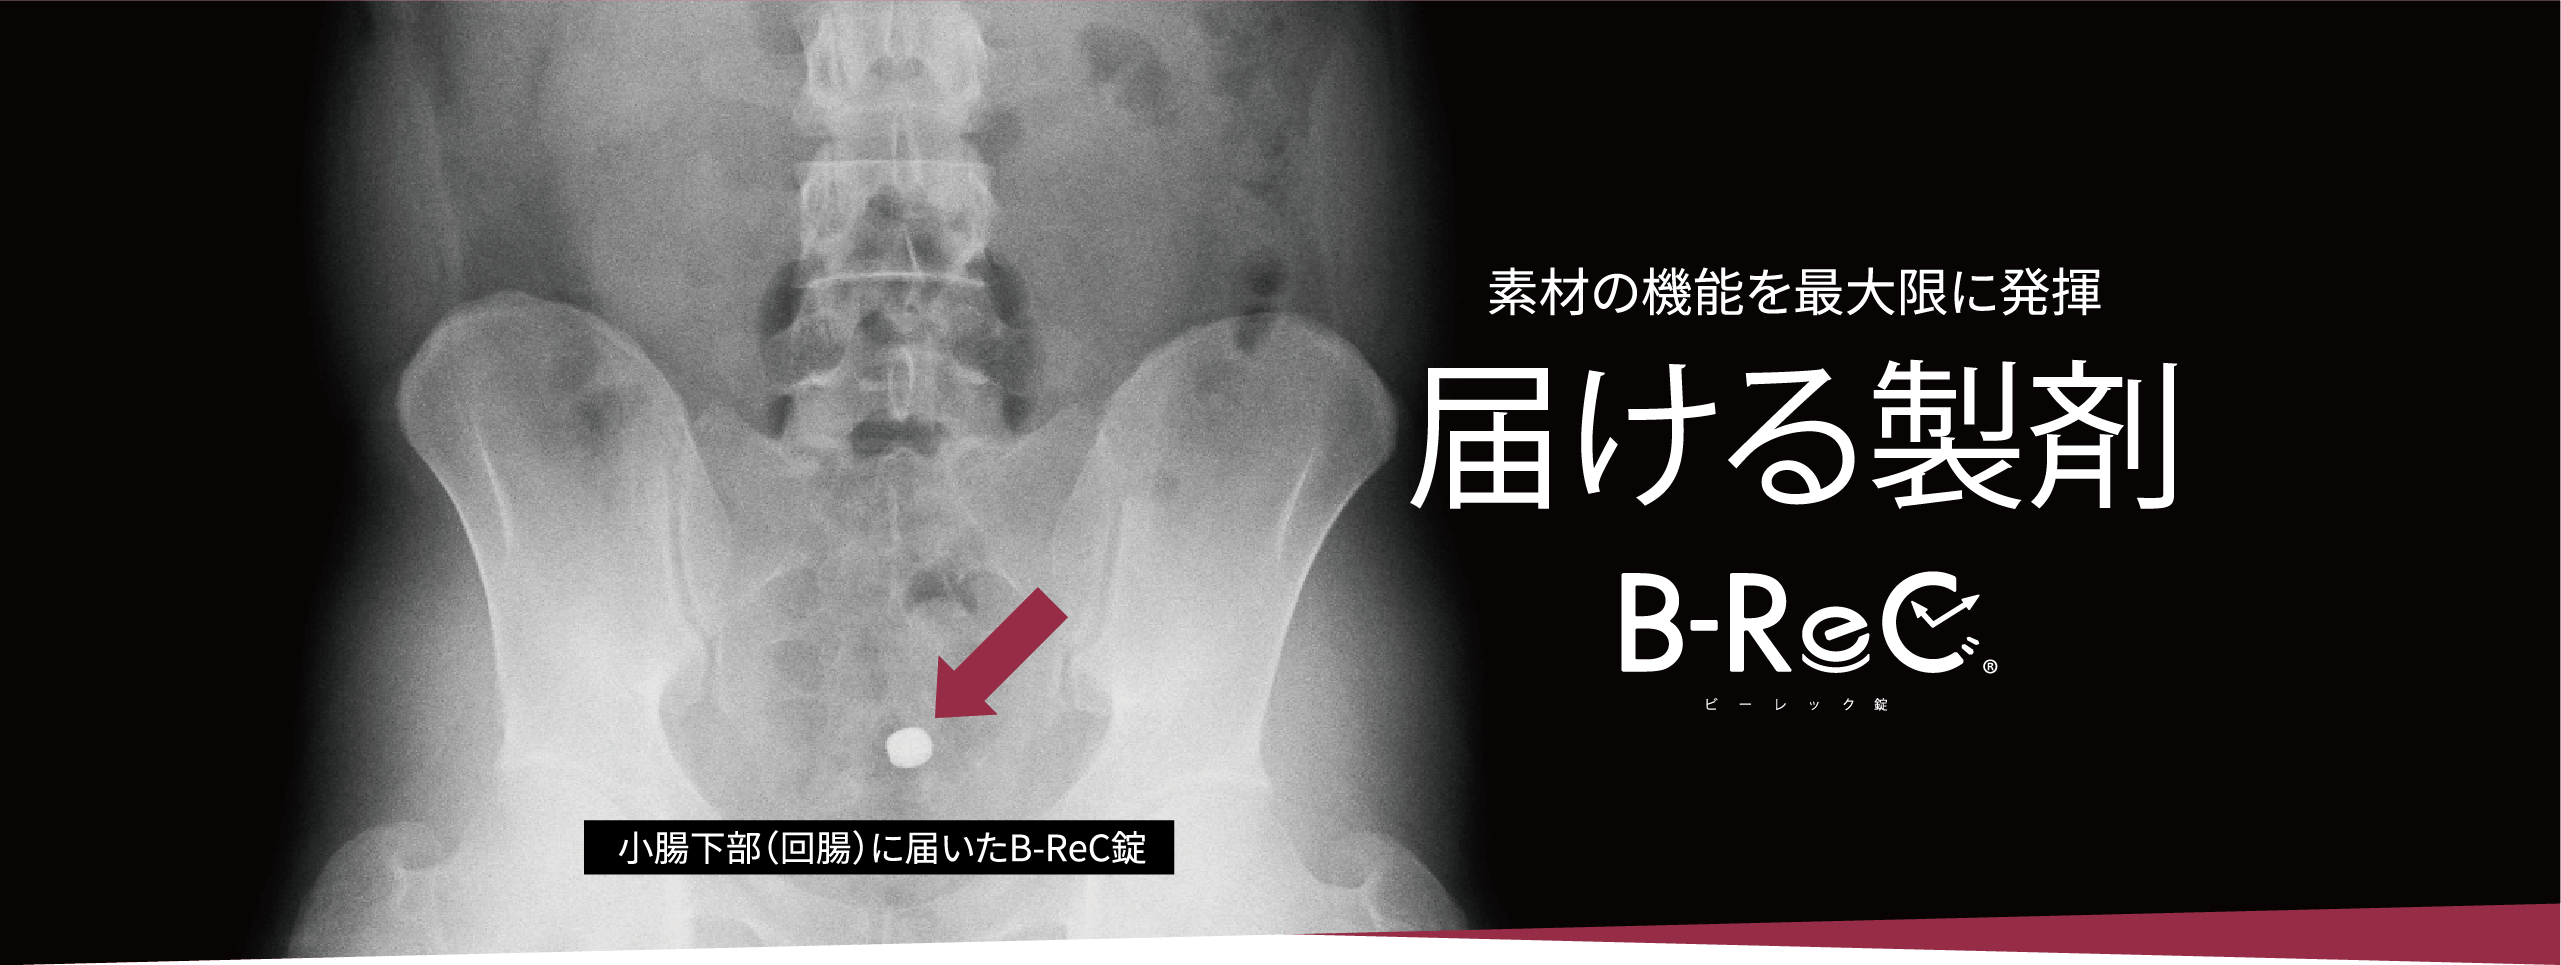 小腸下部（回腸）に届いたB-ReC錠/ 素材の機能を最大限に発揮 届ける製剤 B-ReCビーレック